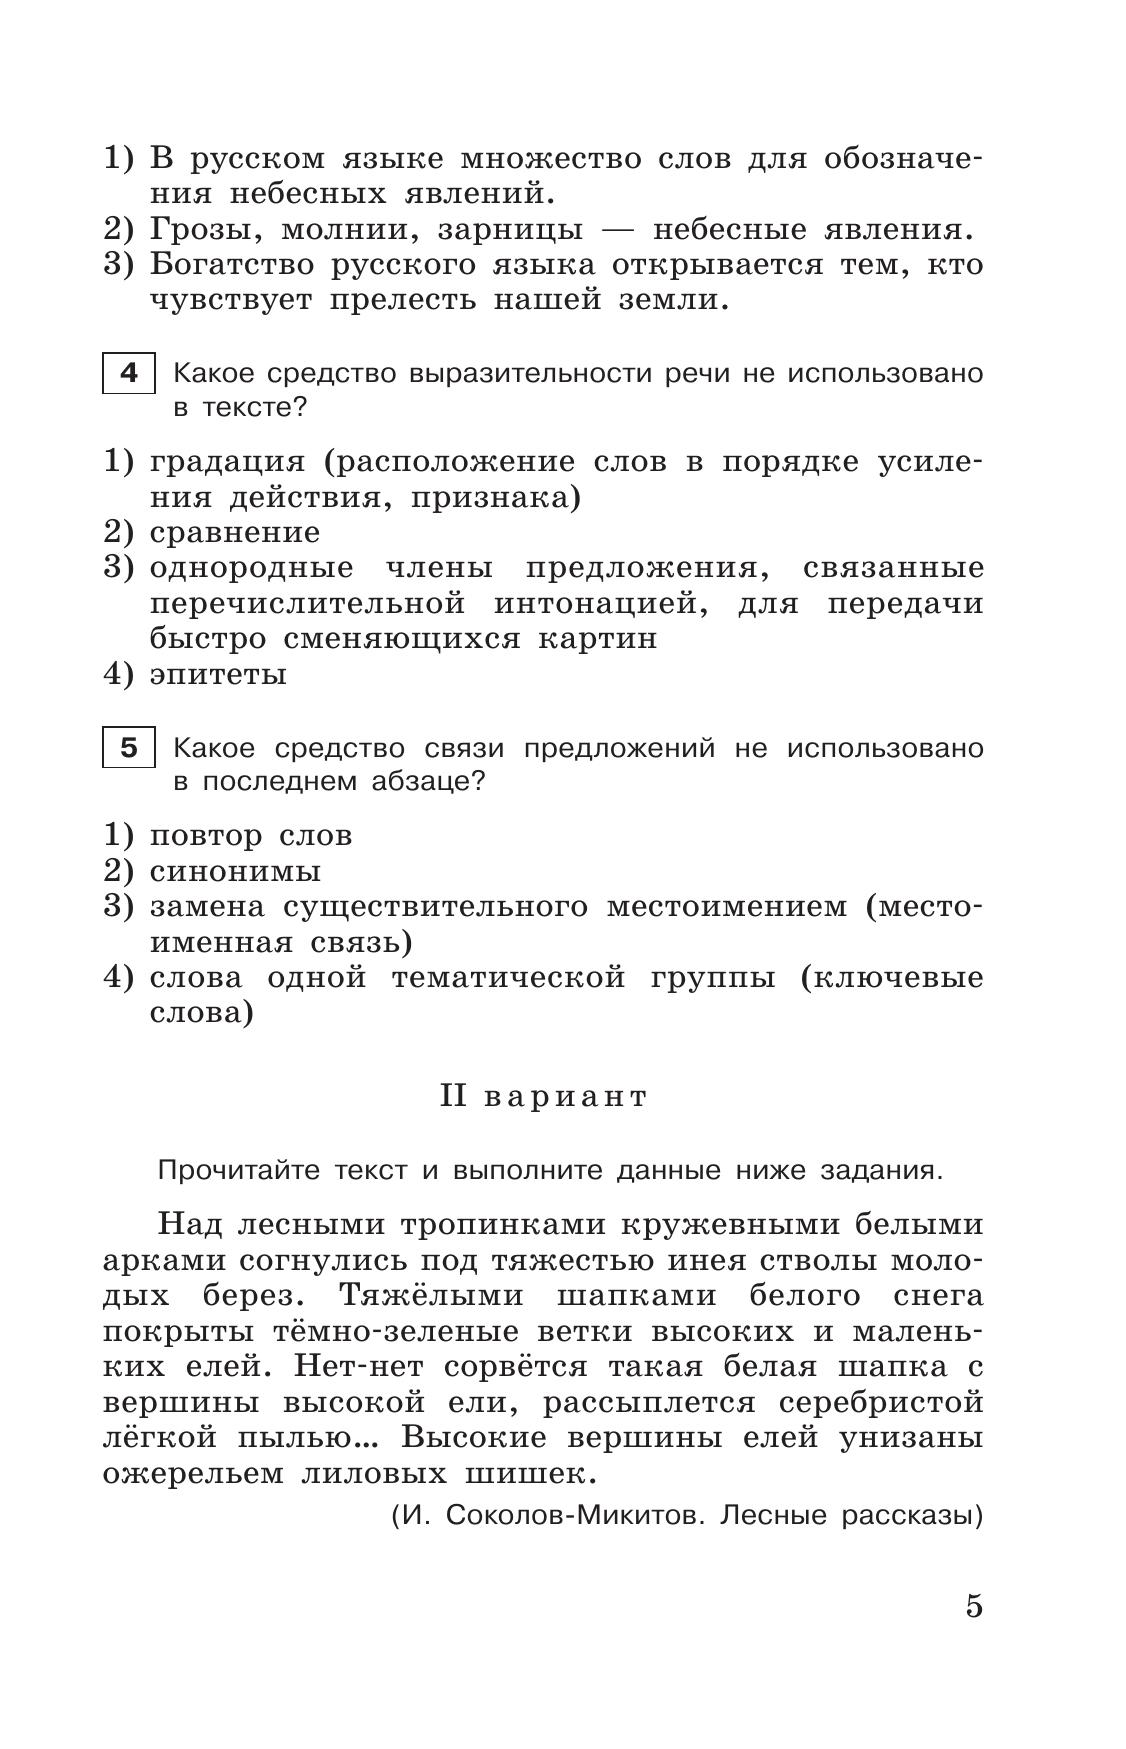 Тестовые задания по русскому языку. 6 класс. 4